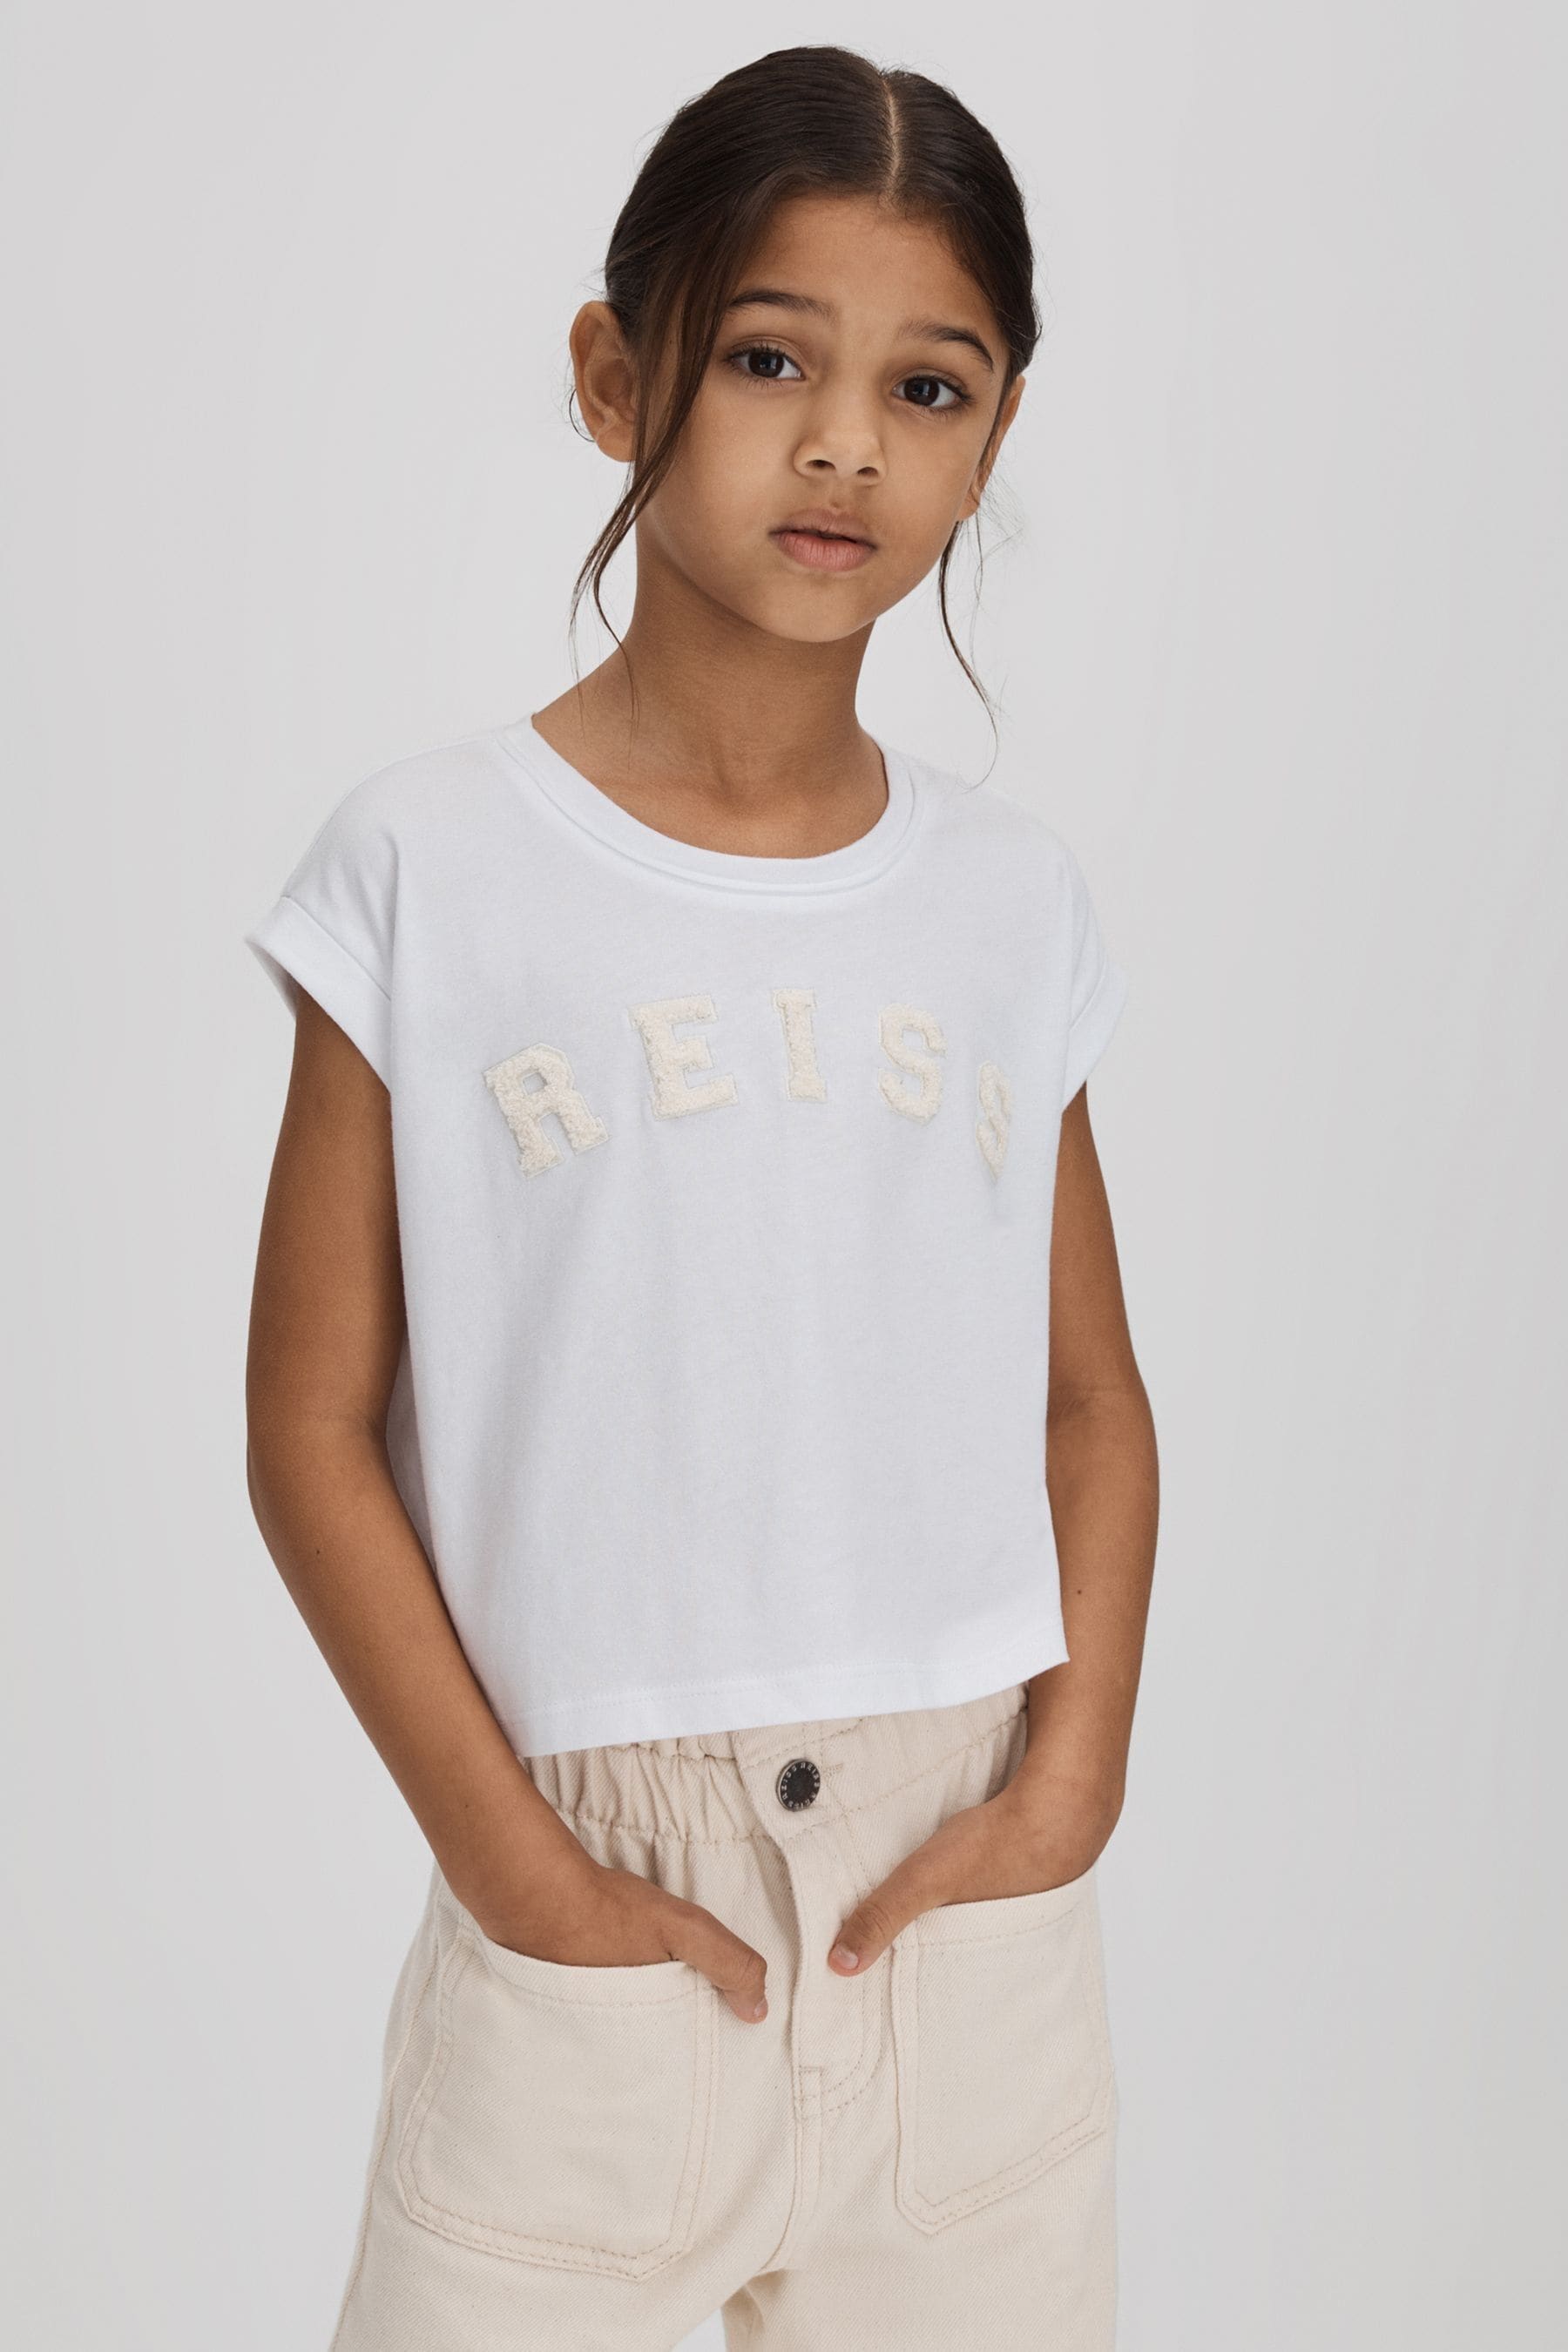 Reiss Kids' Taya - White Senior Textured Motif Cotton Crew Neck T-shirt, Uk 10-11 Yrs